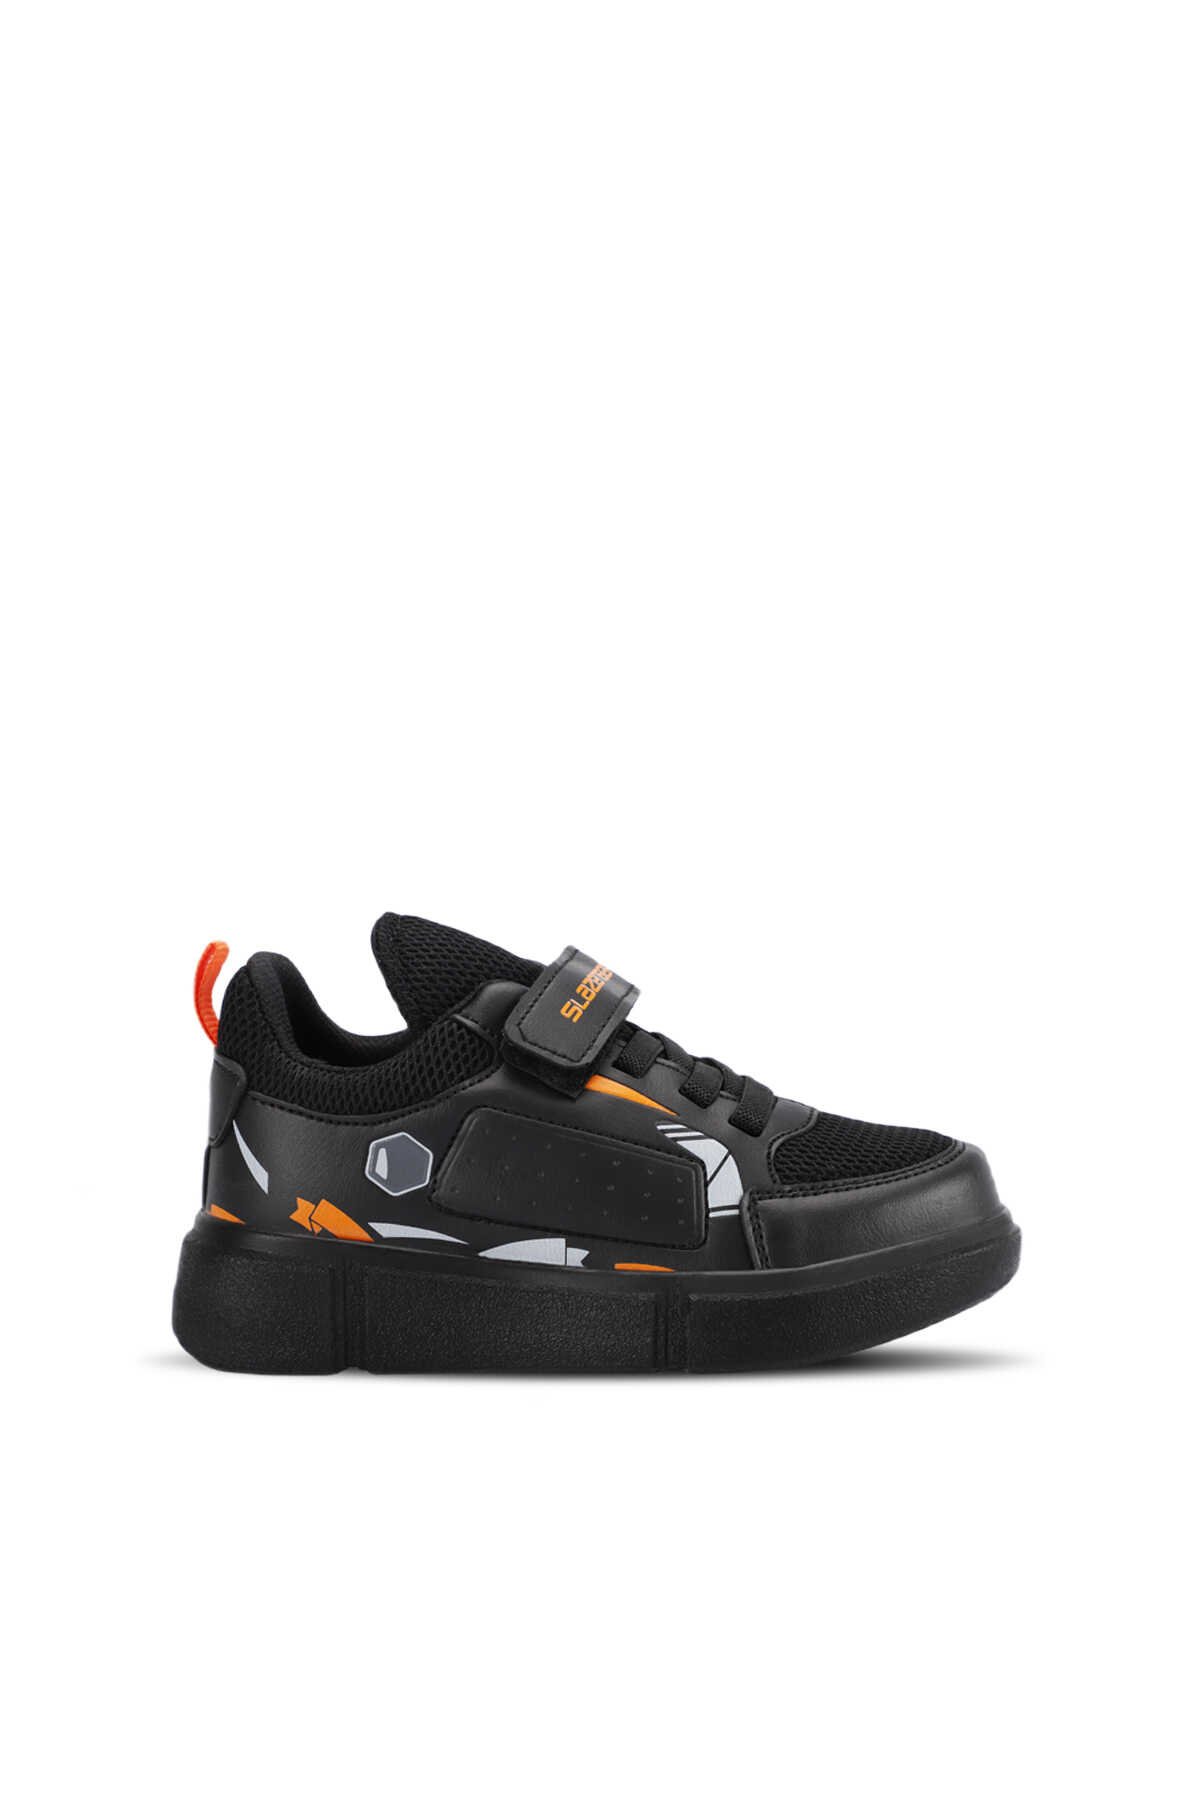 Slazenger - Slazenger KEPA Sneaker Erkek Çocuk Ayakkabı Siyah / Siyah